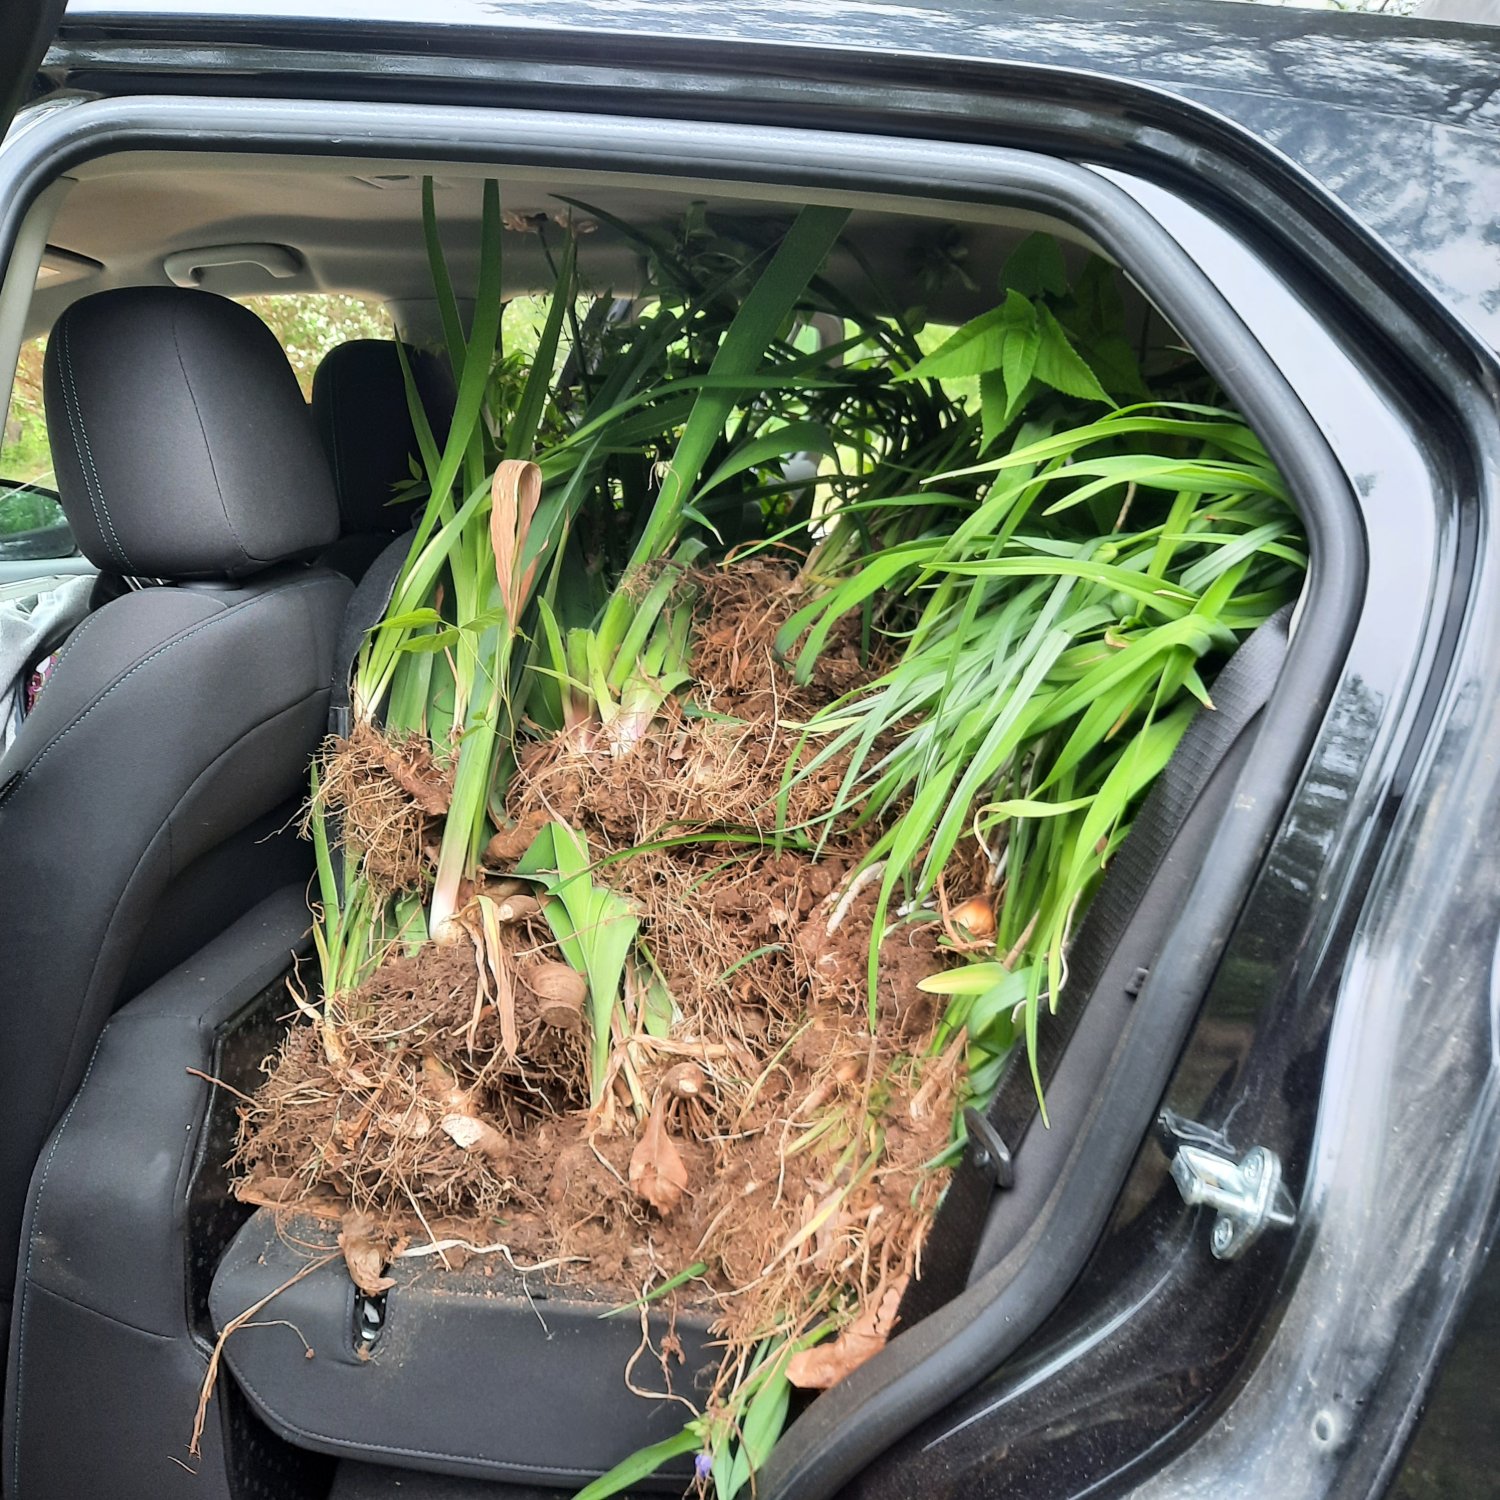 car full of plants.jpg